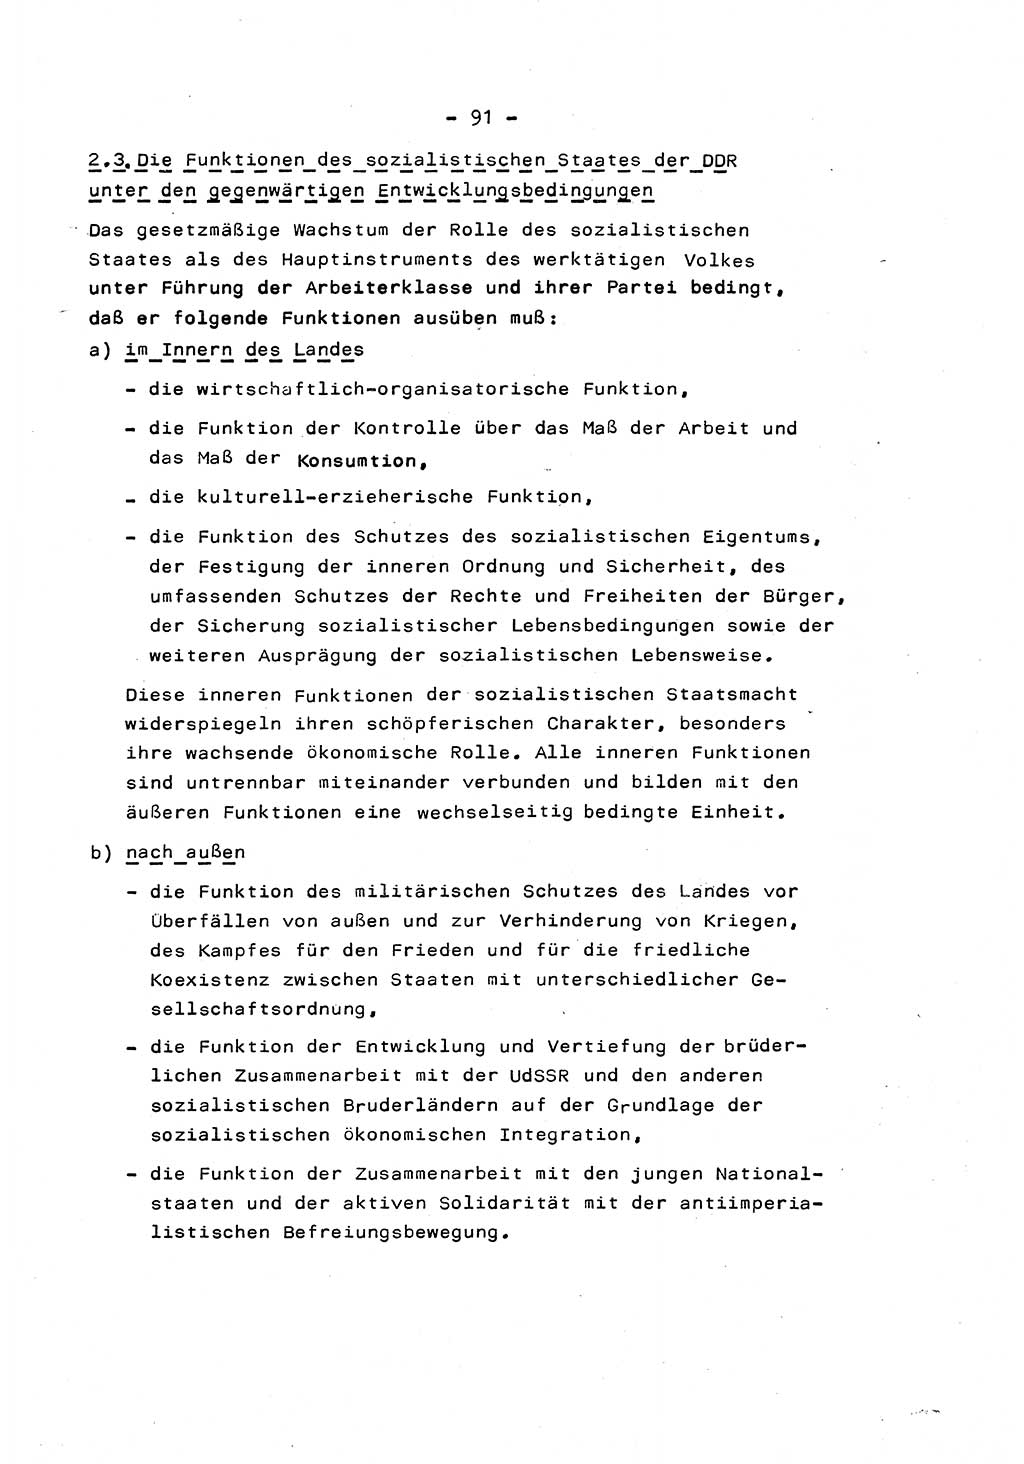 Marxistisch-leninistische Staats- und Rechtstheorie [Deutsche Demokratische Republik (DDR)] 1975, Seite 91 (ML St.-R.-Th. DDR 1975, S. 91)